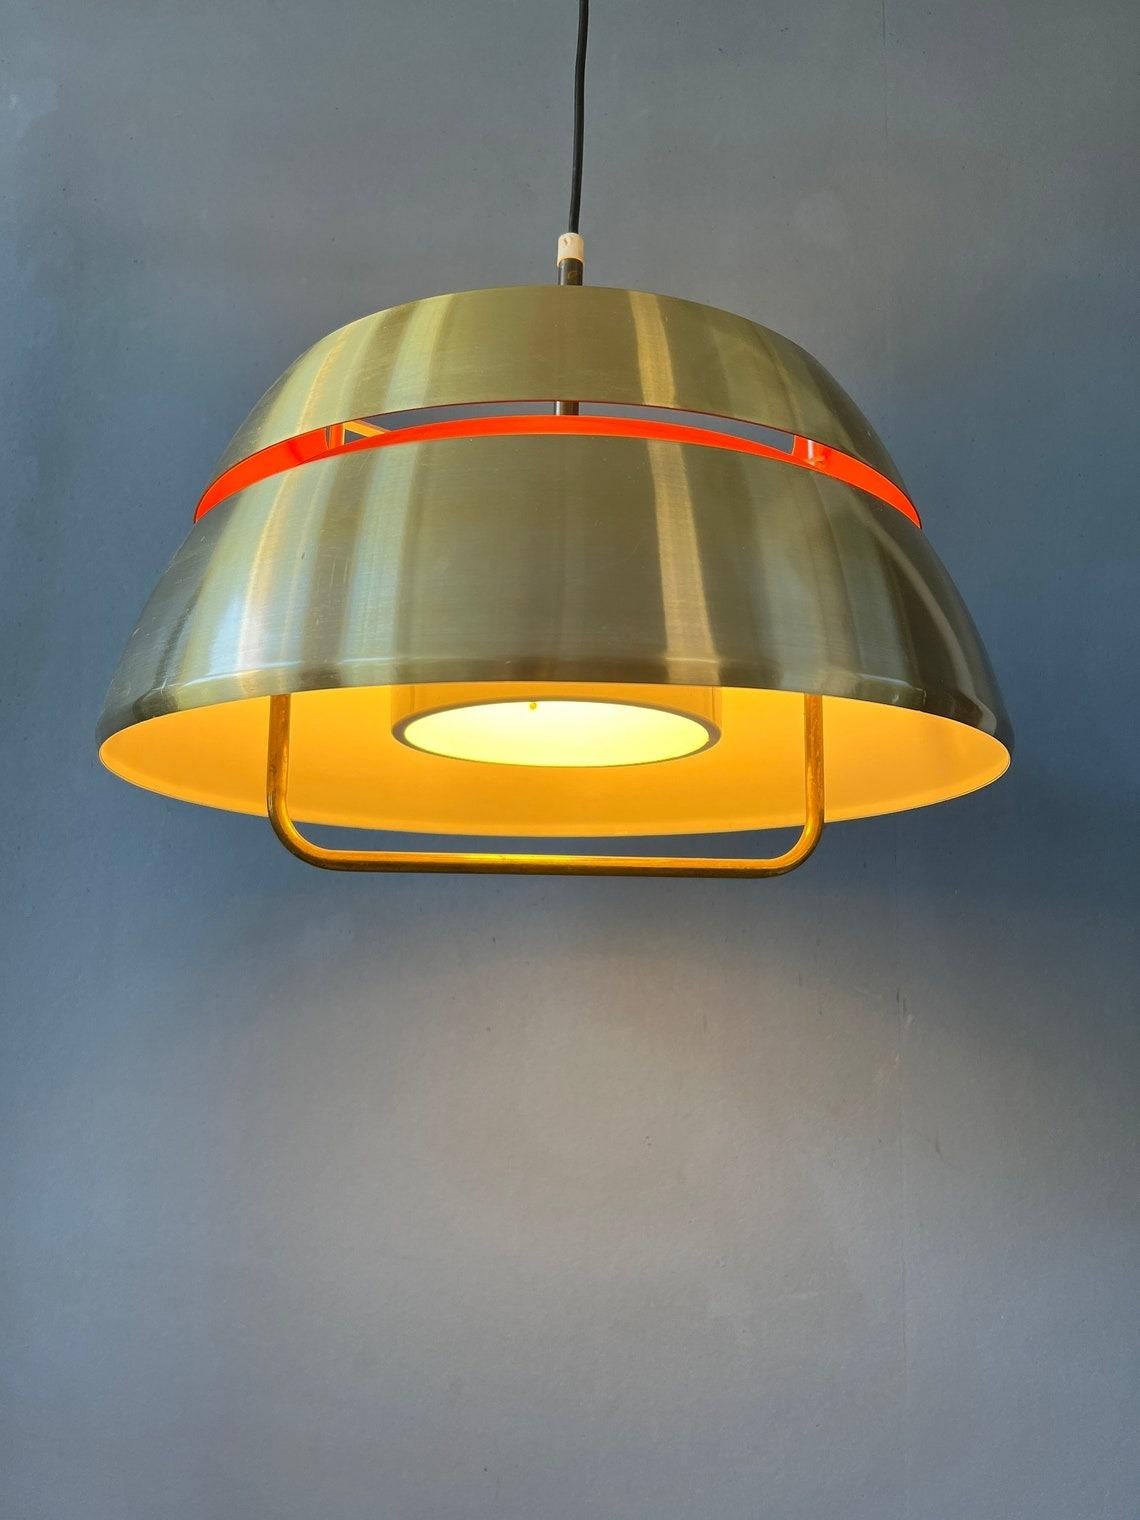 Lampe suspendue orange du milieu du siècle par Lakro Amstelveen. La lampe est fabriquée en acier et possède une laque orange à l'intérieur. La lampe nécessite une ampoule E27/26 (standard). N'hésitez pas à nous contacter si vous avez des